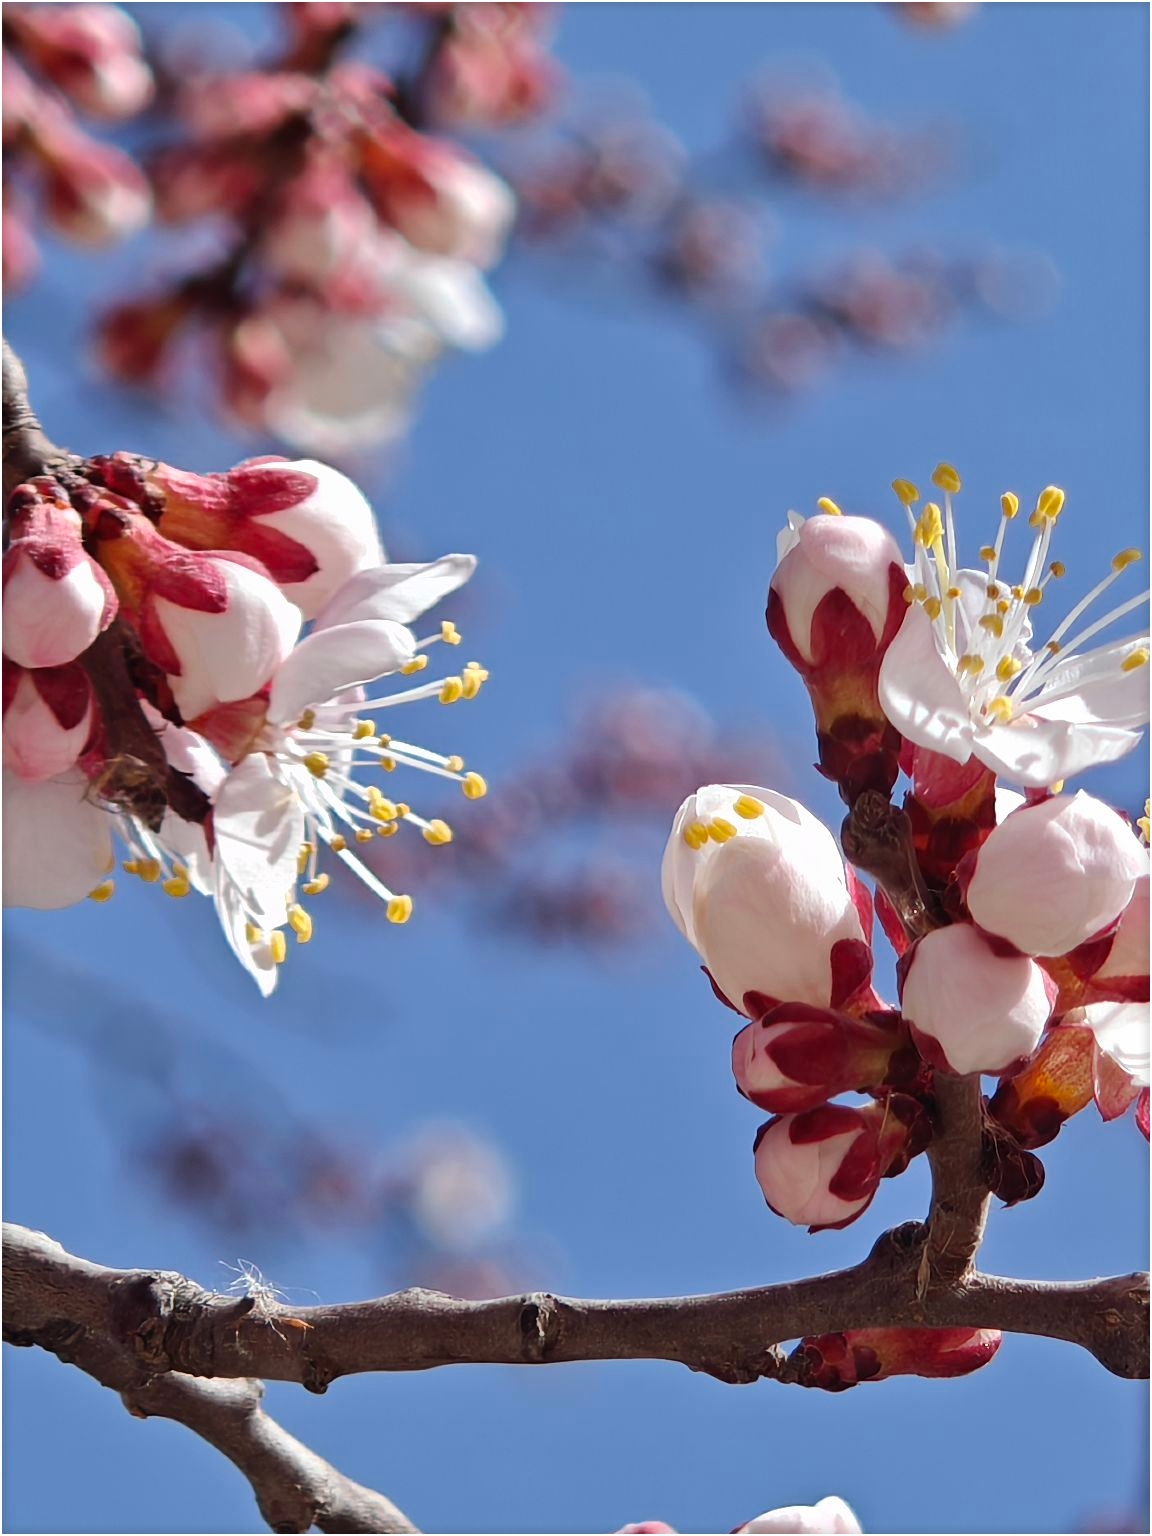 追赶三月的尾巴，贵德桃花已盛开，迎接下一波梨花节。